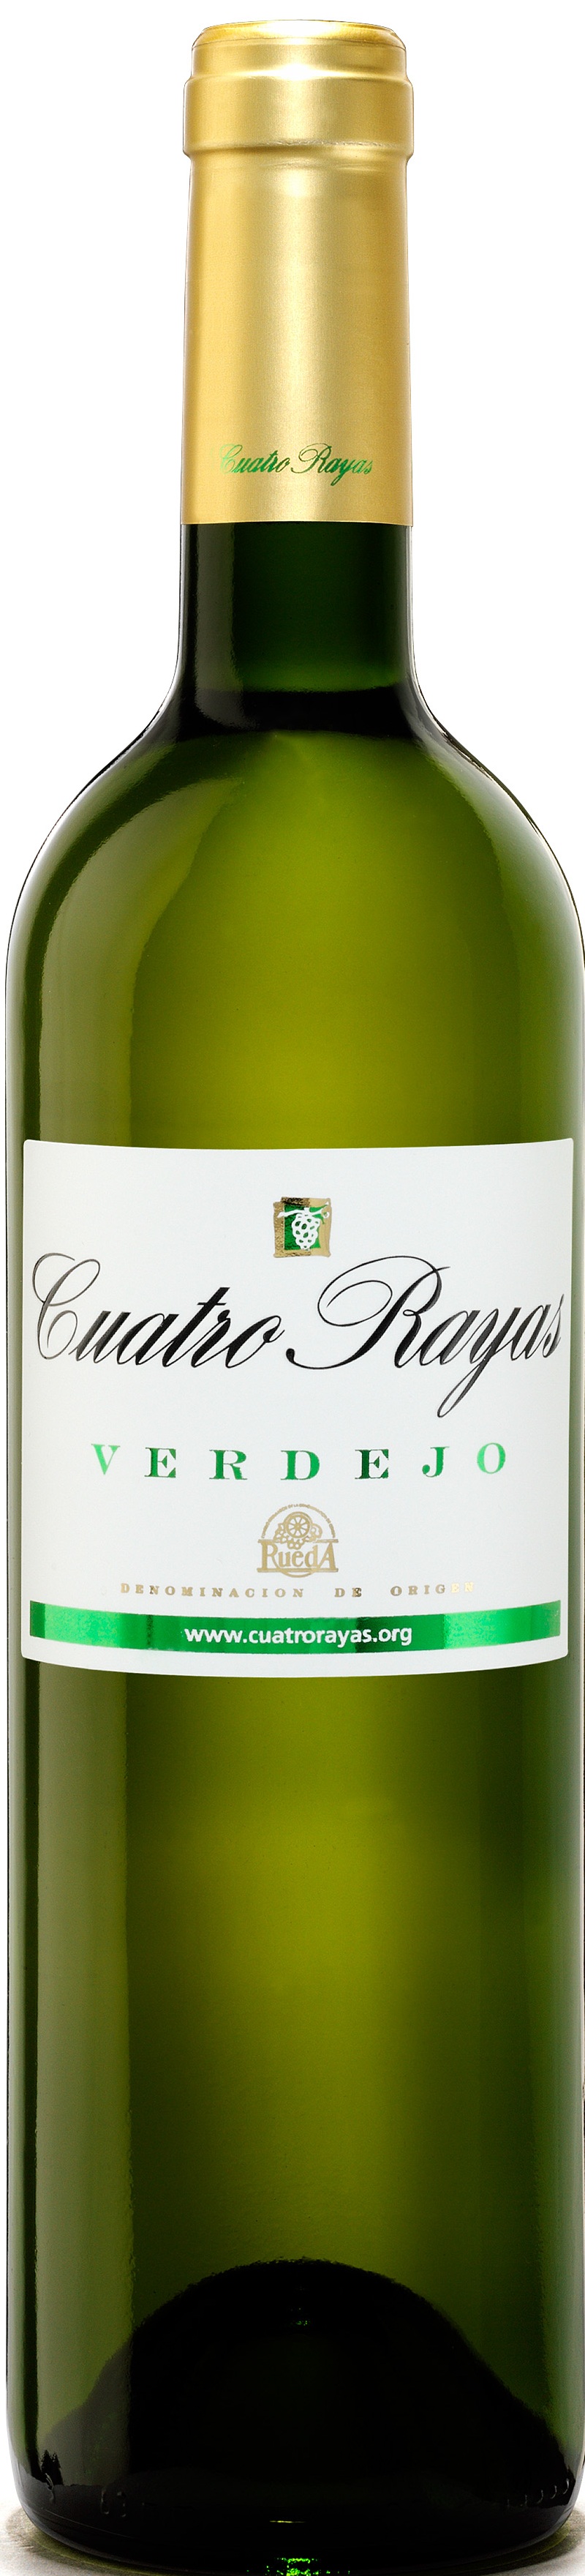 Logo Wine Cuatro Rayas Verdejo